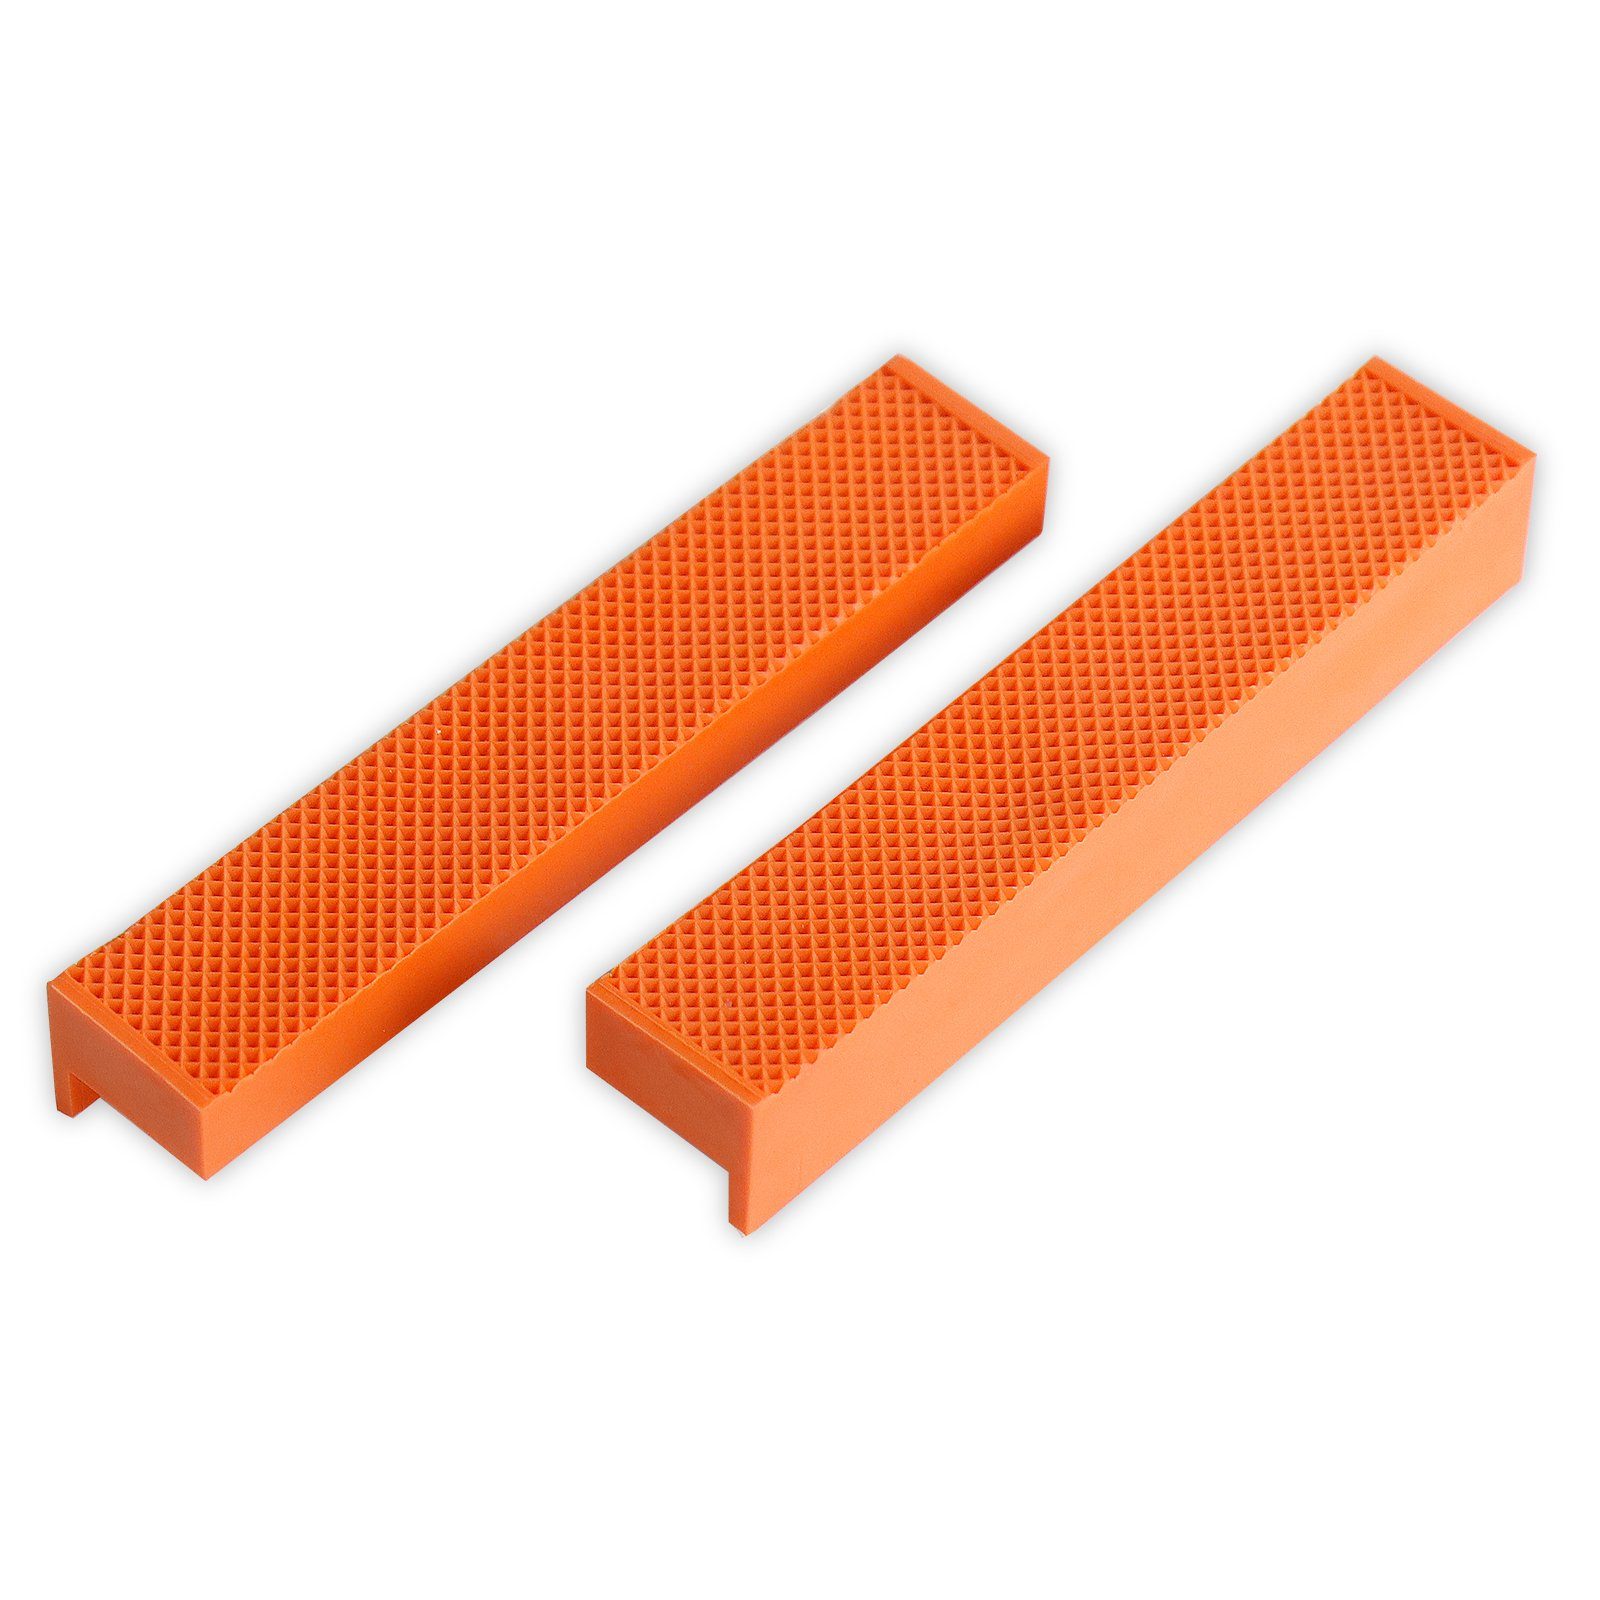 / 150mm 2 tlg Magnet Schraubstock orange 110mm Breite CCLIFE Schraubstock-Schutzbacken mit